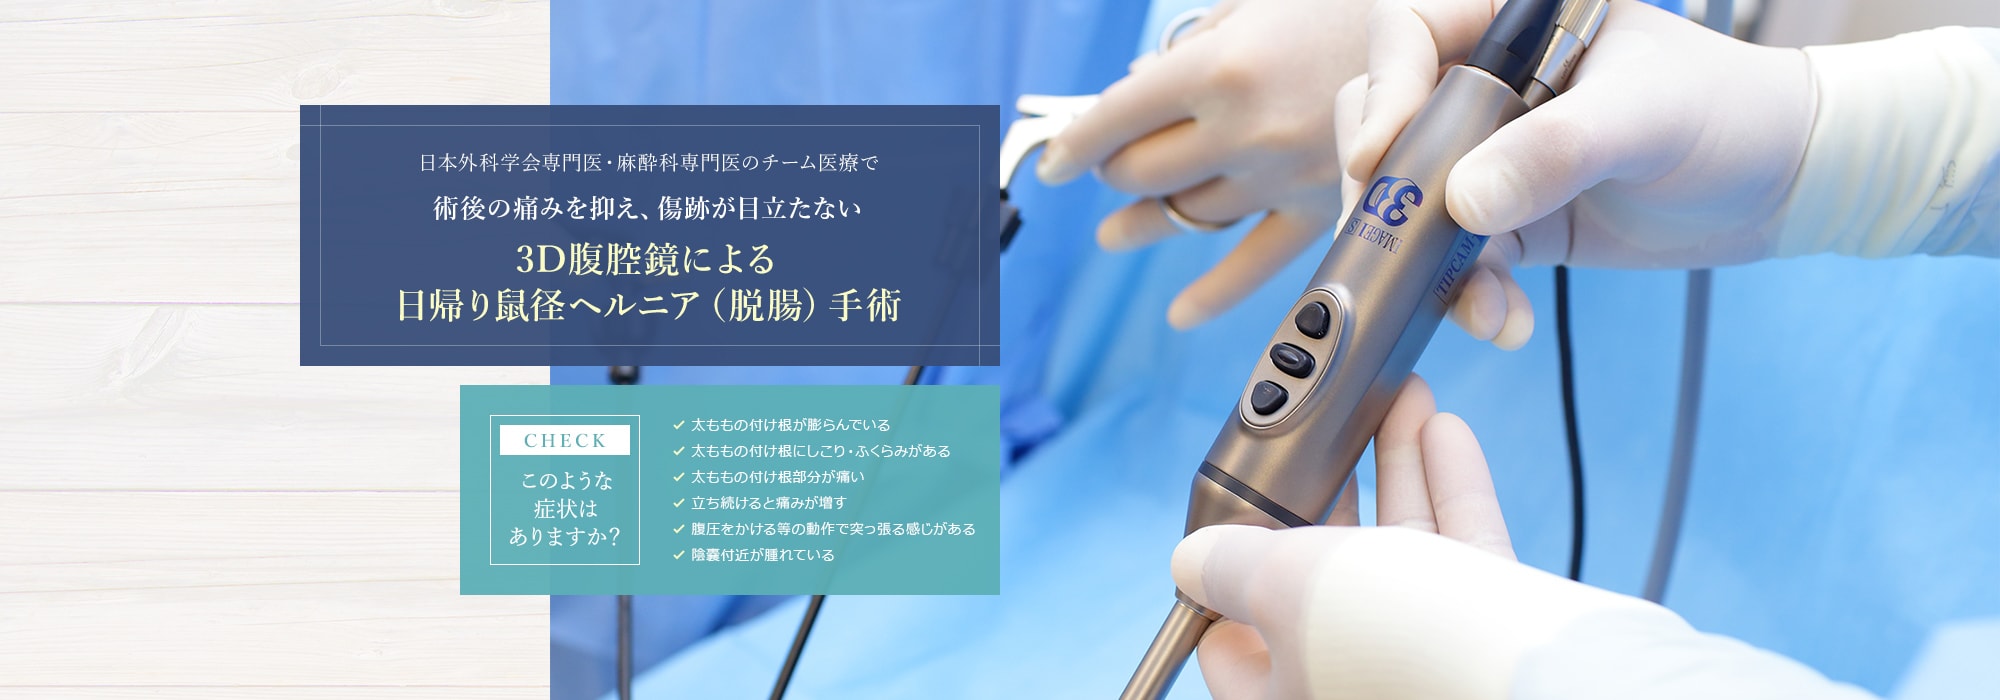 日本外科学会専門医・麻酔科専門医のチーム医療で術後の痛みを抑え、傷跡が目立たない3D腹腔鏡による日帰り鼠径ヘルニア（脱腸）手術